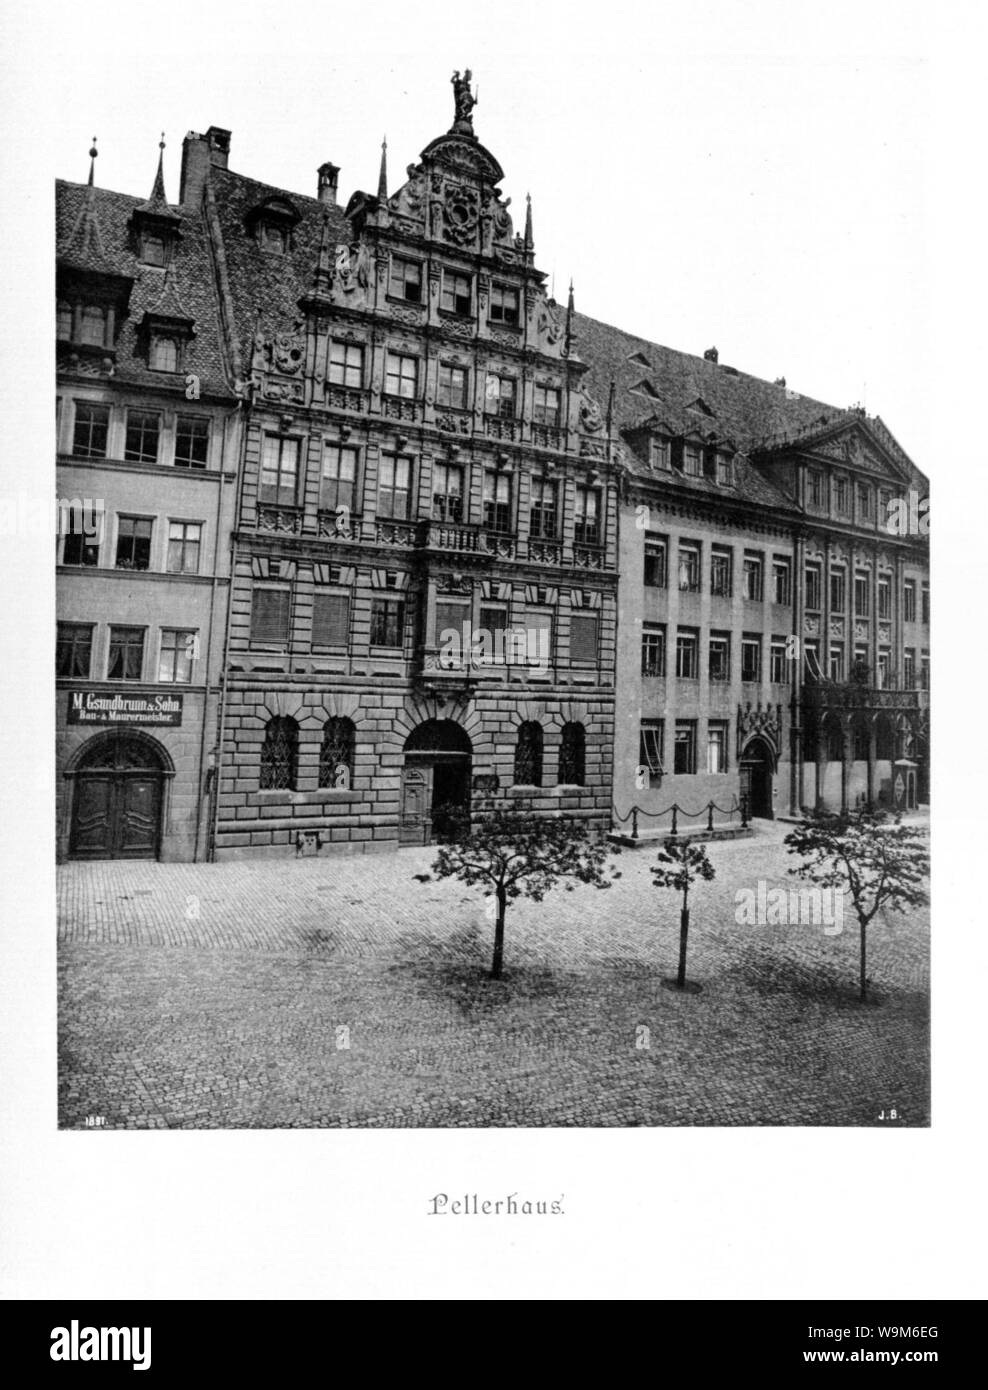 Die Baudenkmäler der Stadt Nürnberg 021 Pellerhaus. Stock Photo